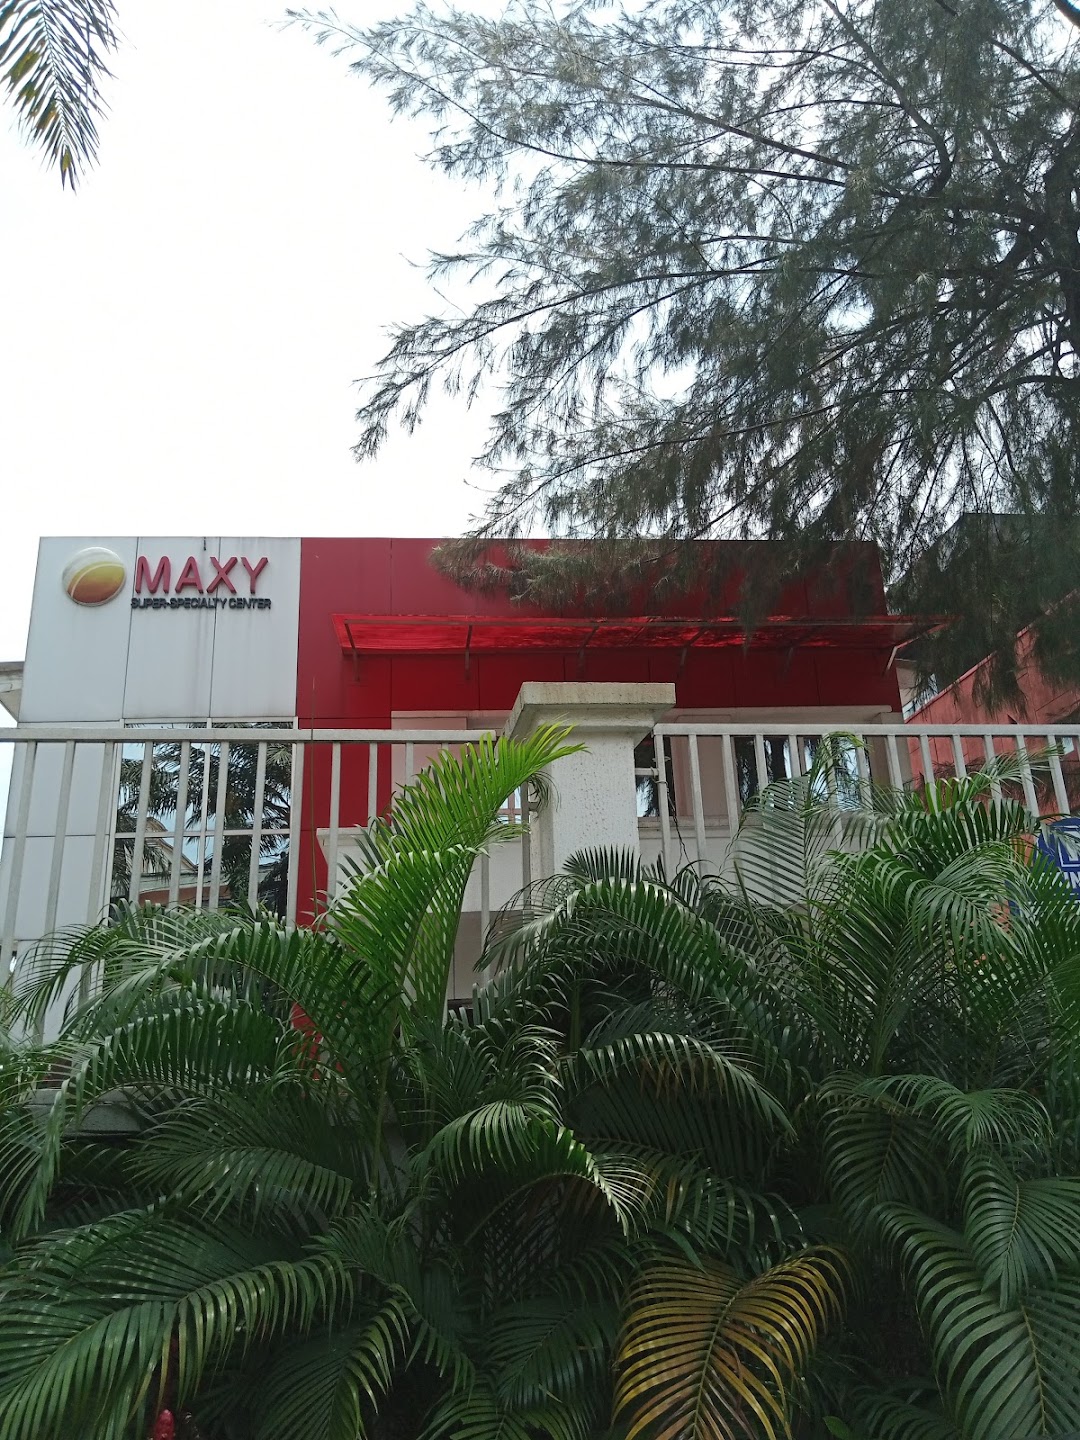 Maxy Specialist Hospital